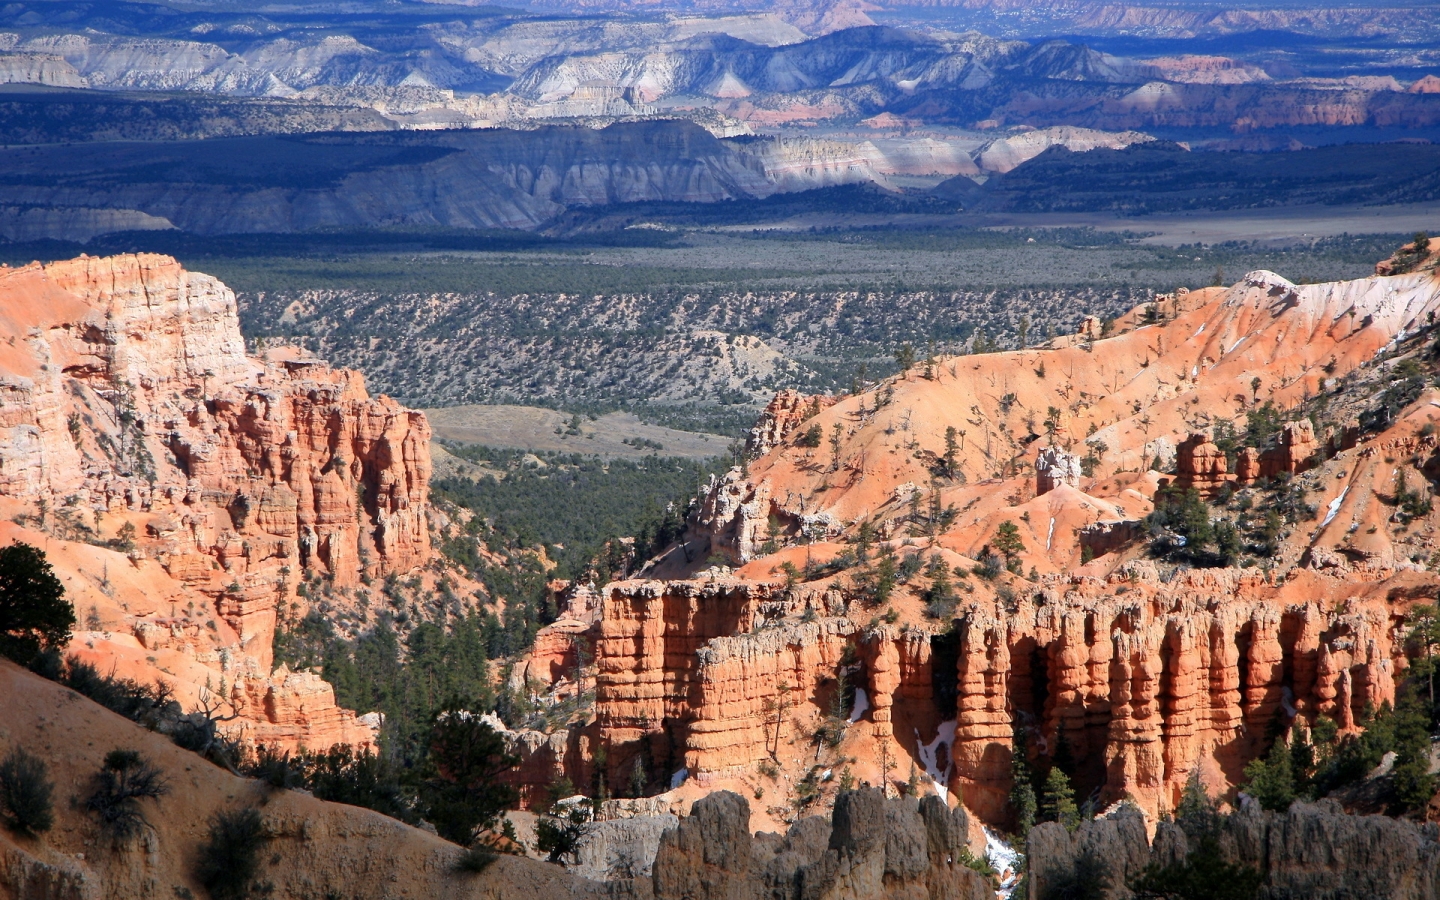 Colorado Canyon View for 1440 x 900 widescreen resolution